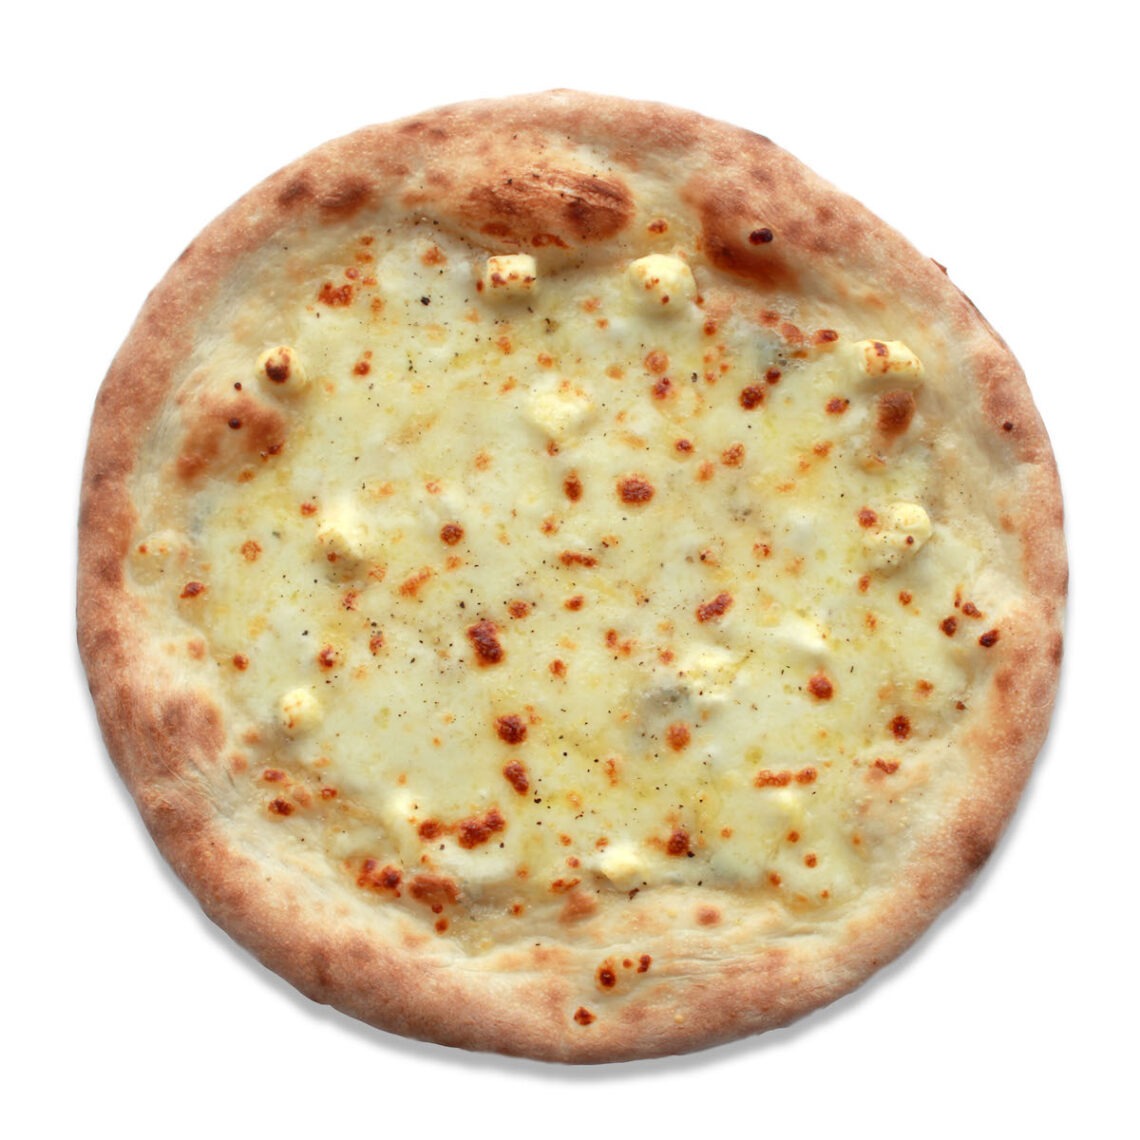 ４種チーズのピザ
Quattro Formaggio Pizza
1,580 円(税込)